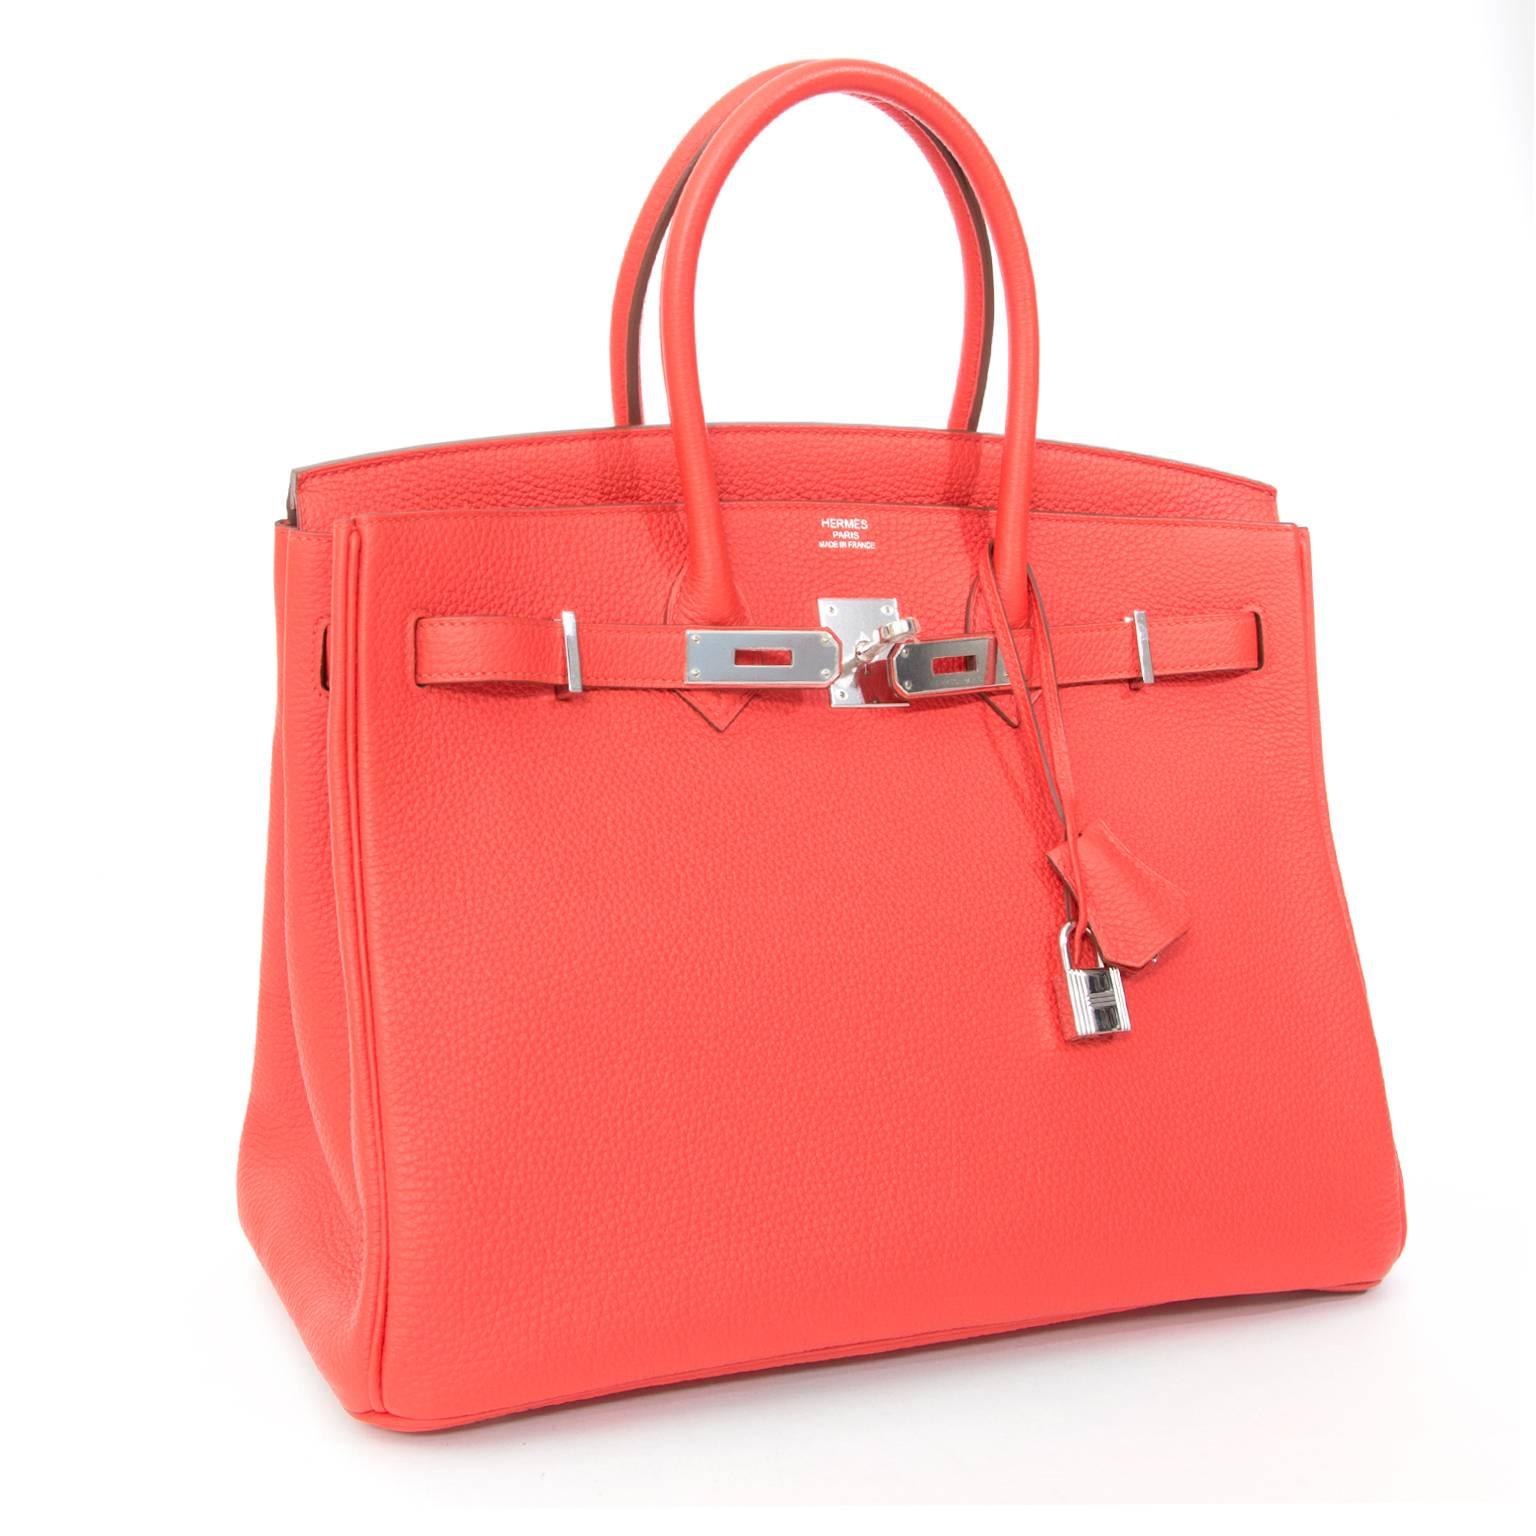 Dies ist eine brandneue, auf Lager gekaufte und nie getragene Hermès Birkin Tasche, handgefertigt aus dem berühmten luxuriösen Togo-Kalbsleder. Seine Farbe heißt Rouge Capucine, was sich auf die leuchtend orange-rote Farbe der Blütenblätter der